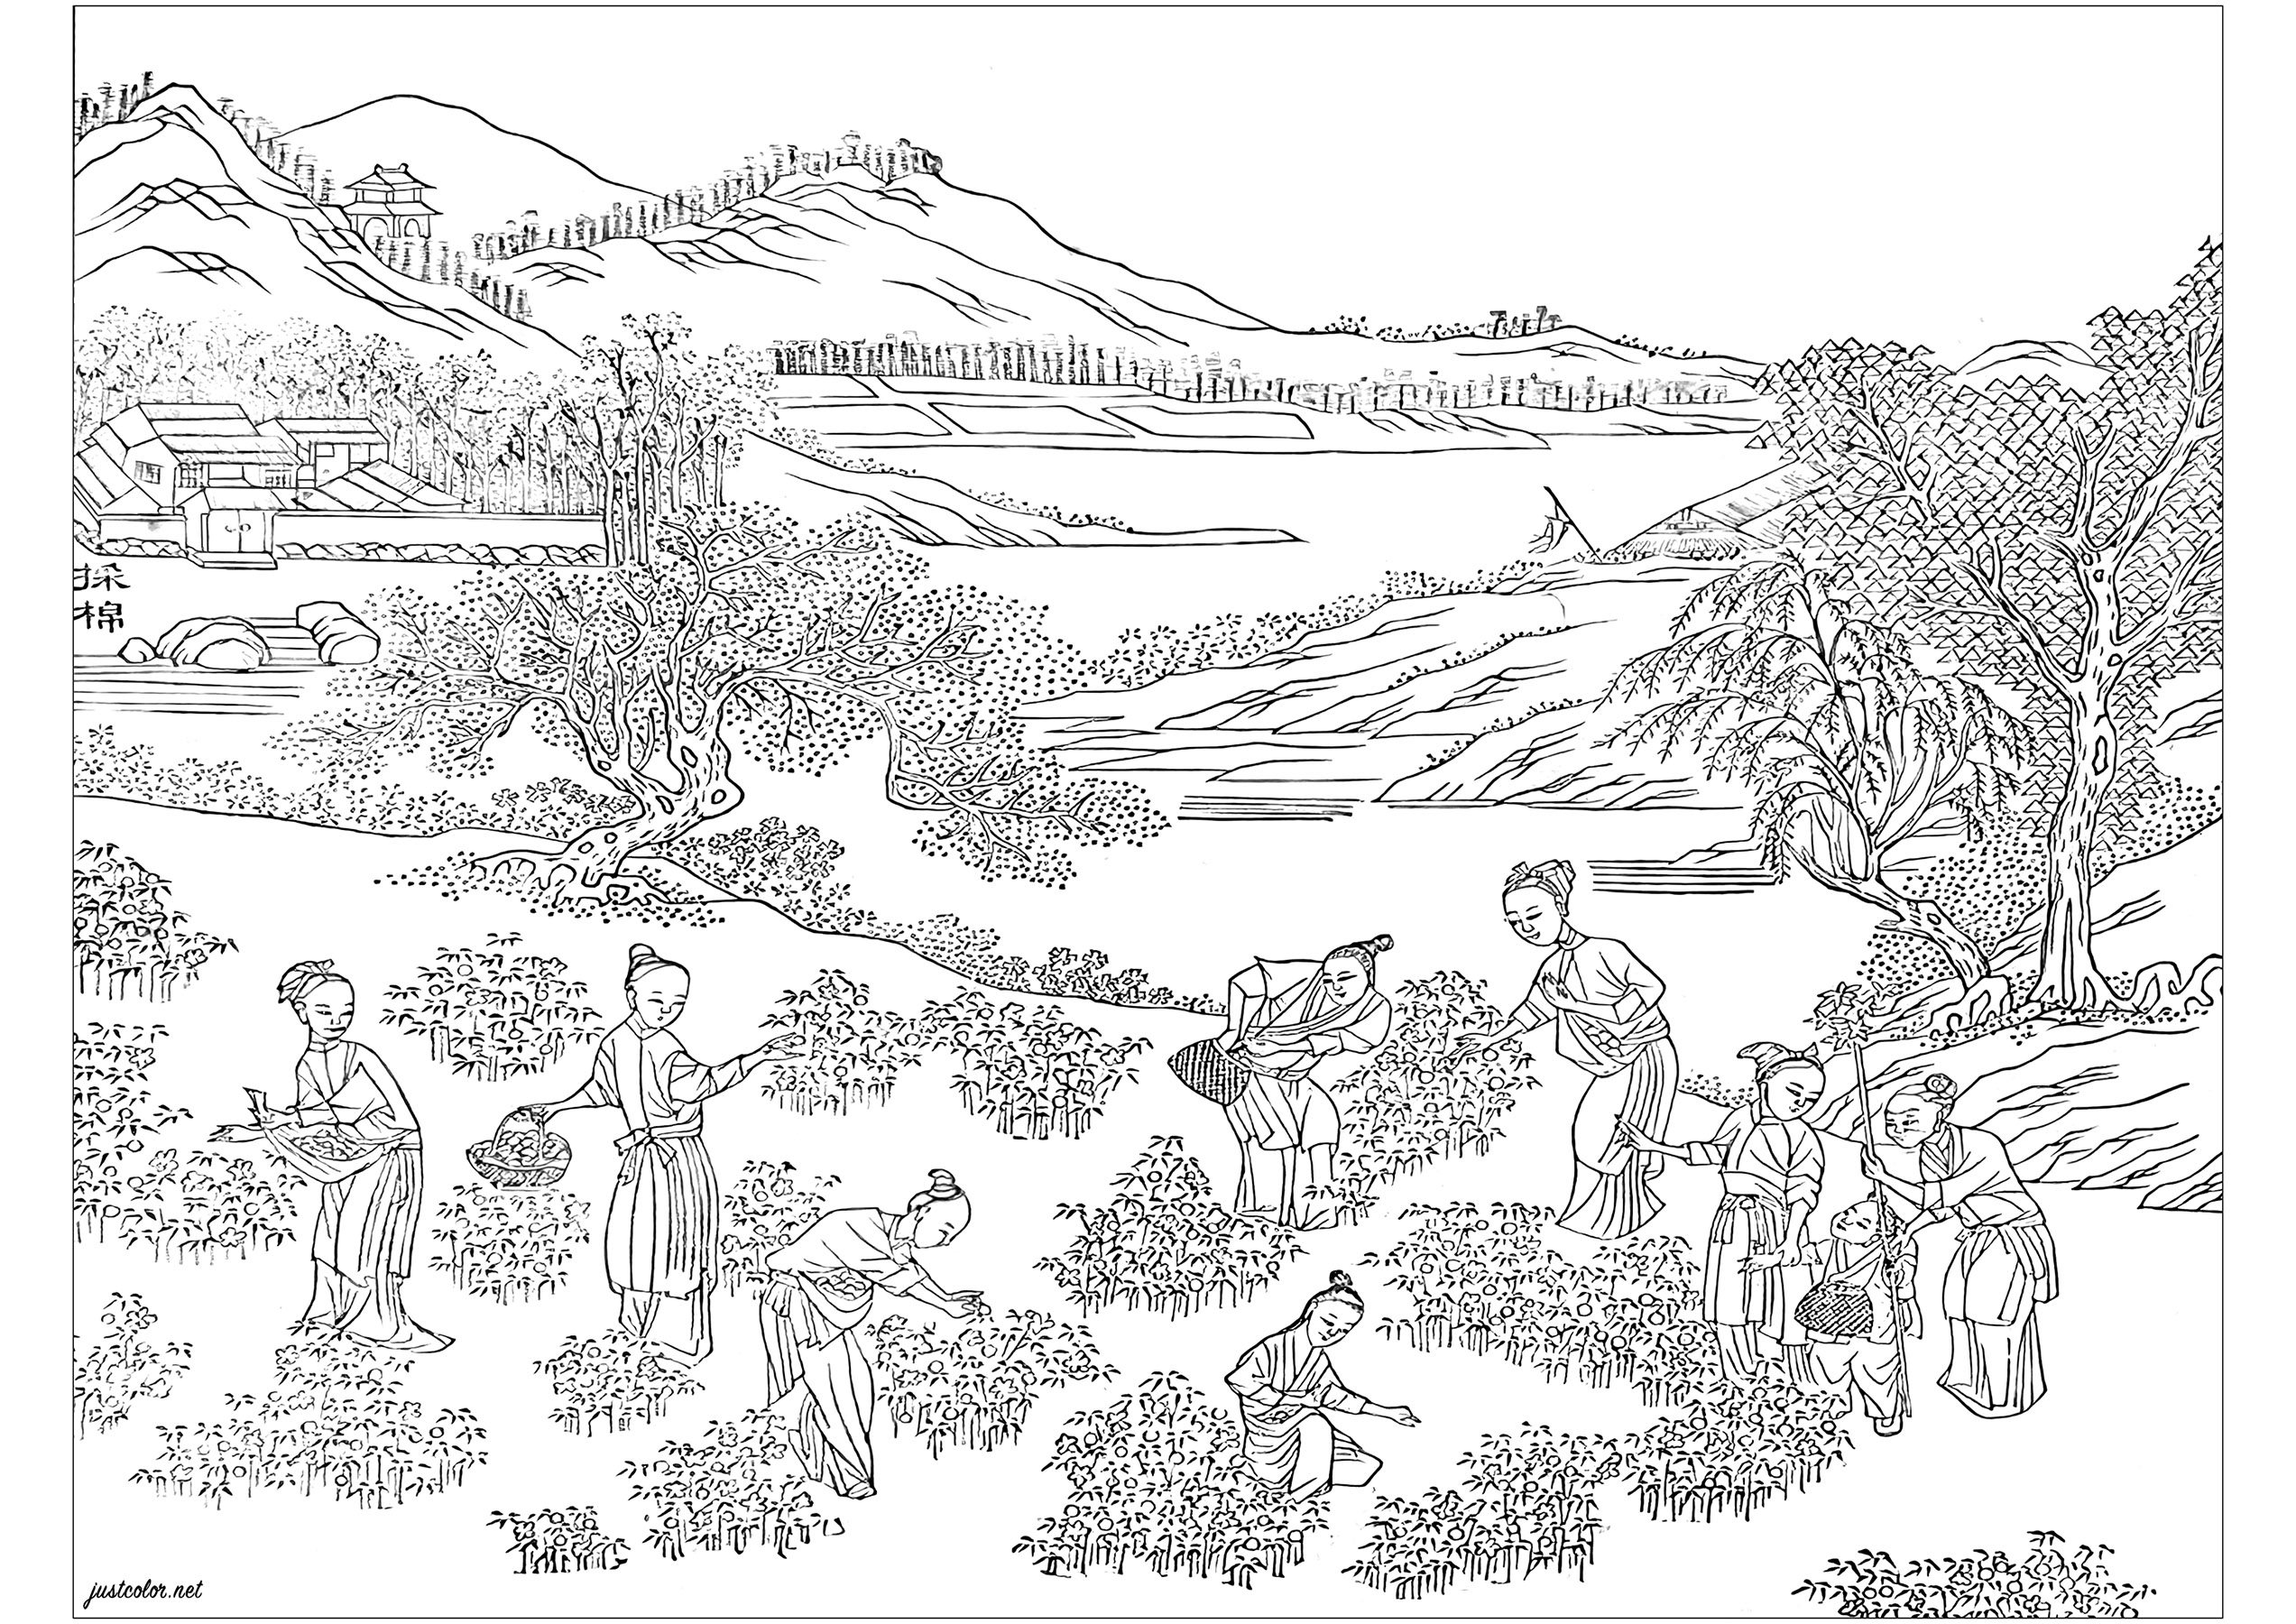 Página para colorear creada a partir de una página de dibujo del álbum impreso 'Cuadros que ilustran la producción de algodón' (1765). Este álbum fue producido para promocionar la última tecnología para el cultivo del algodón y la producción textil en la China del siglo XVIII. Este libro forma parte de la Biblioteca Chester Beatty, en Dublín, Irlanda.